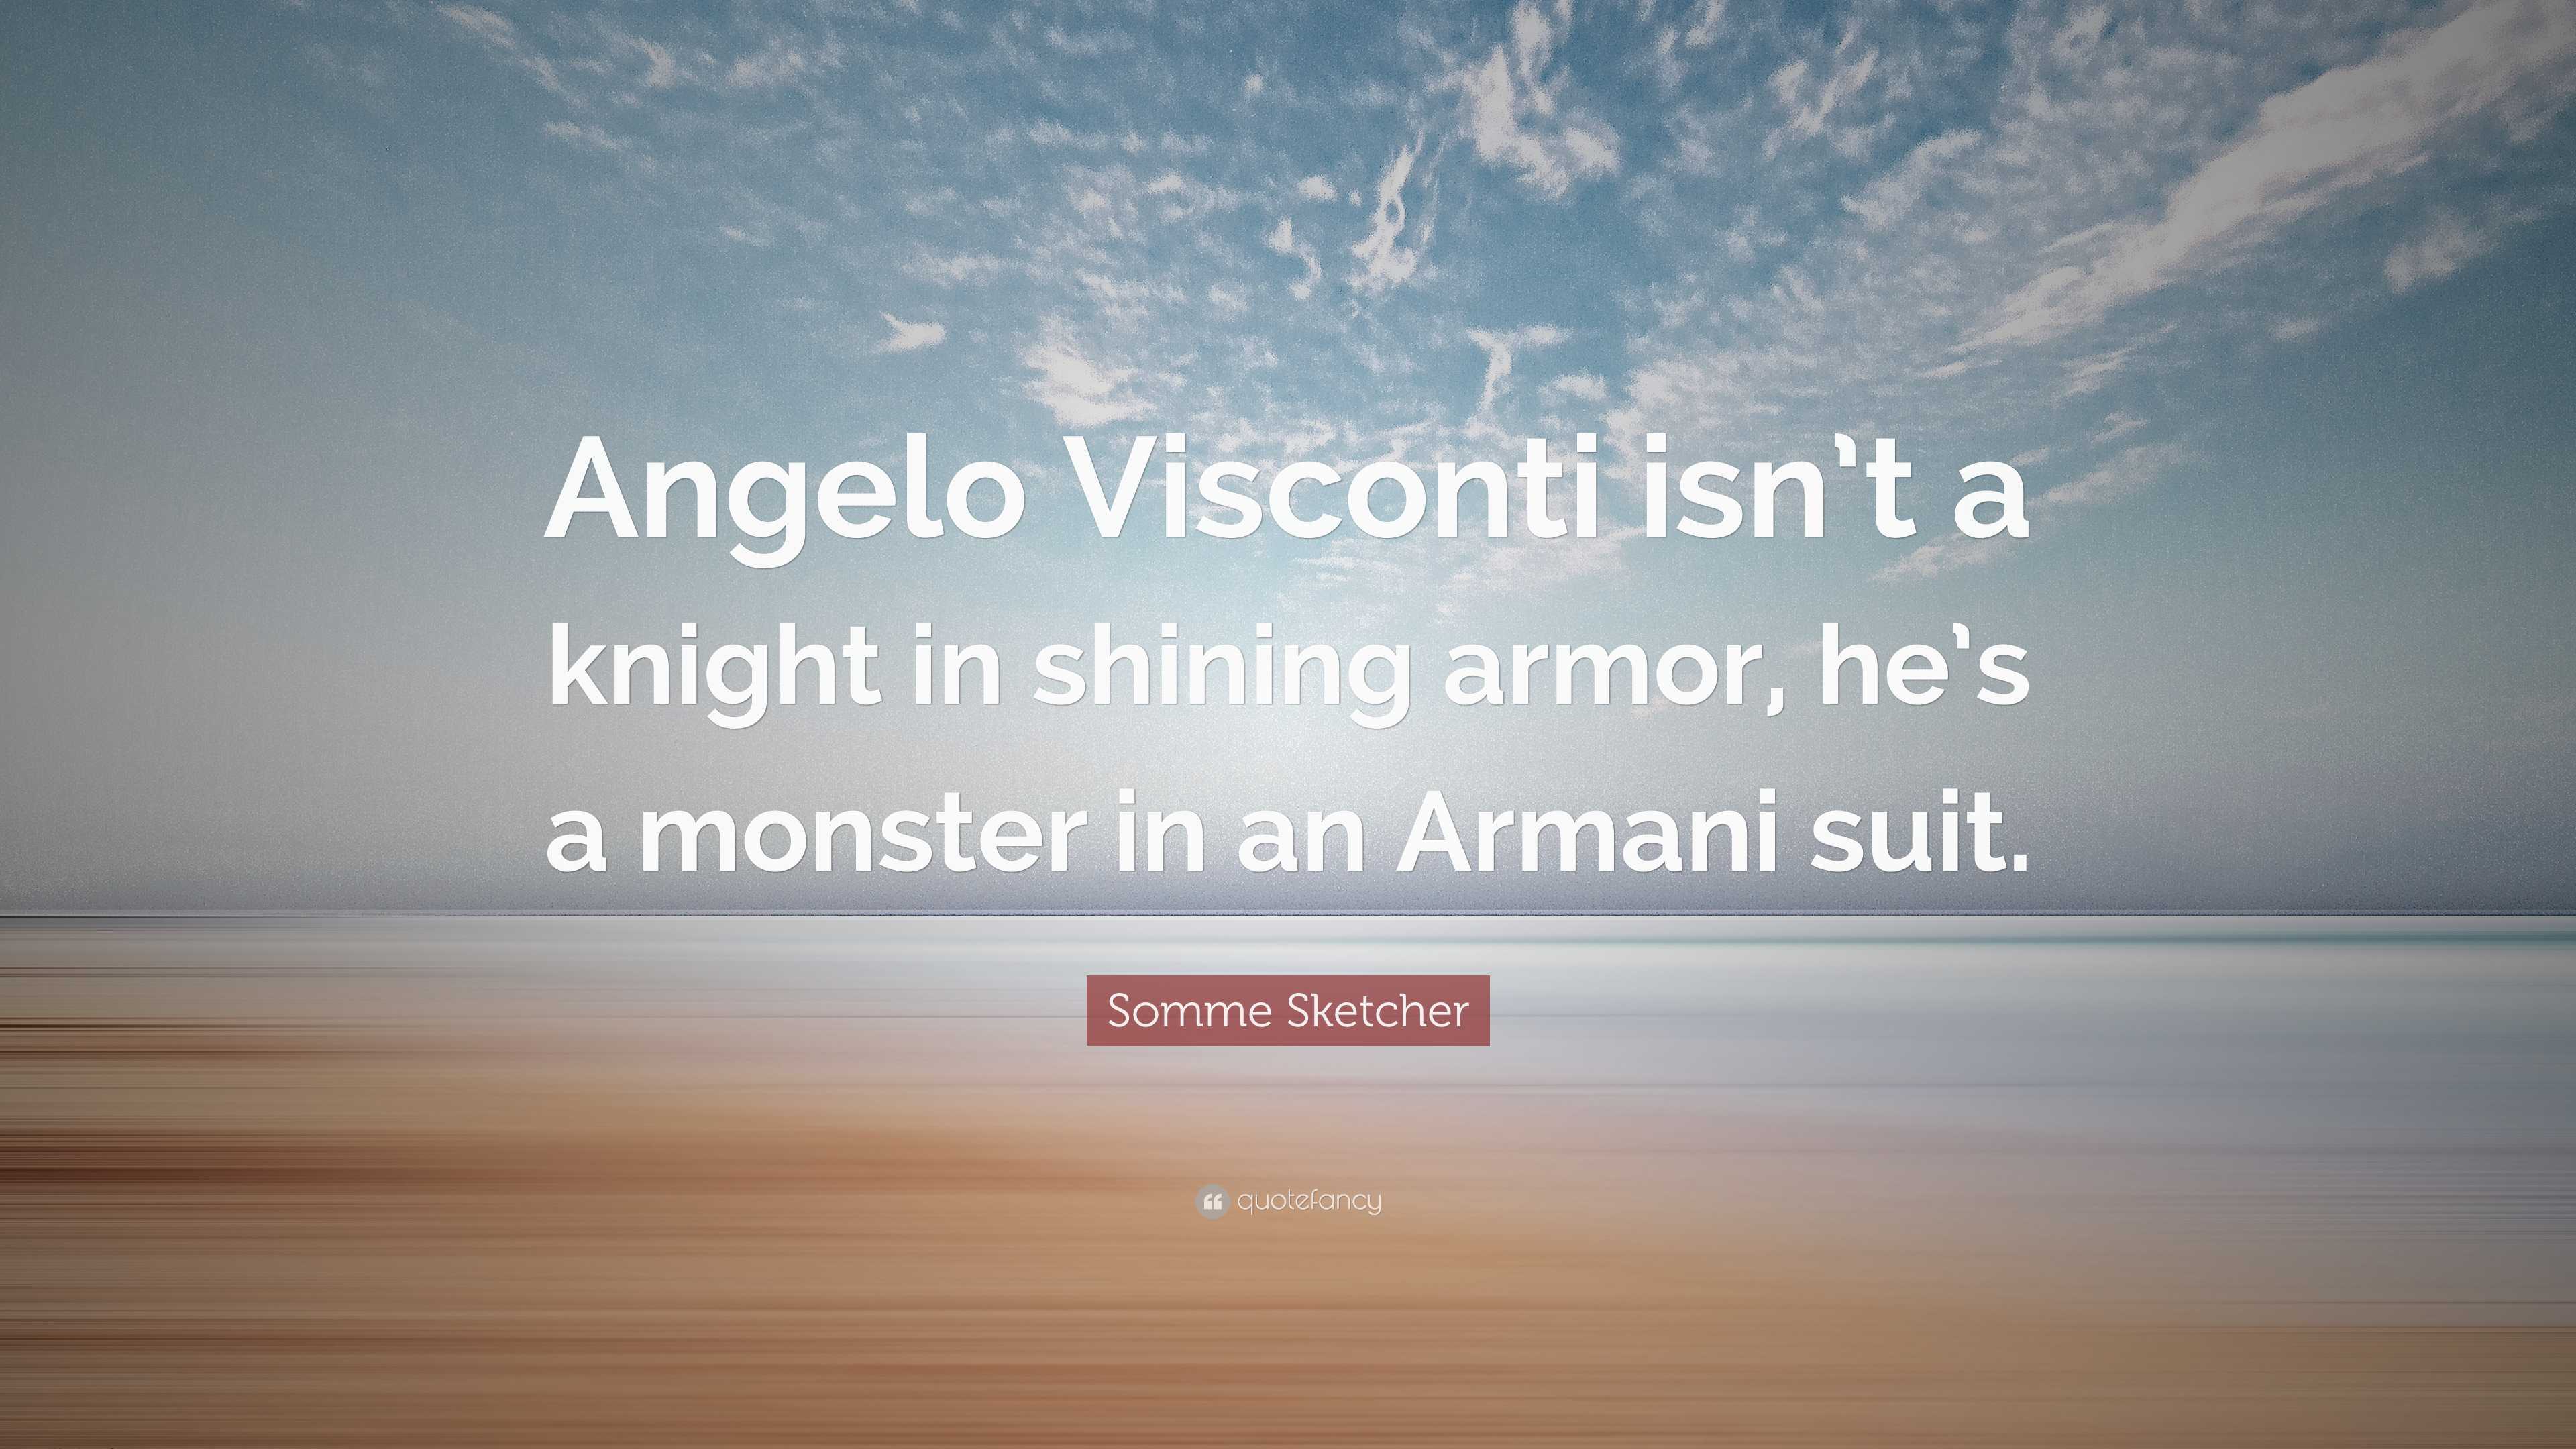 alicia mayer recommends Knight In Shining Armani